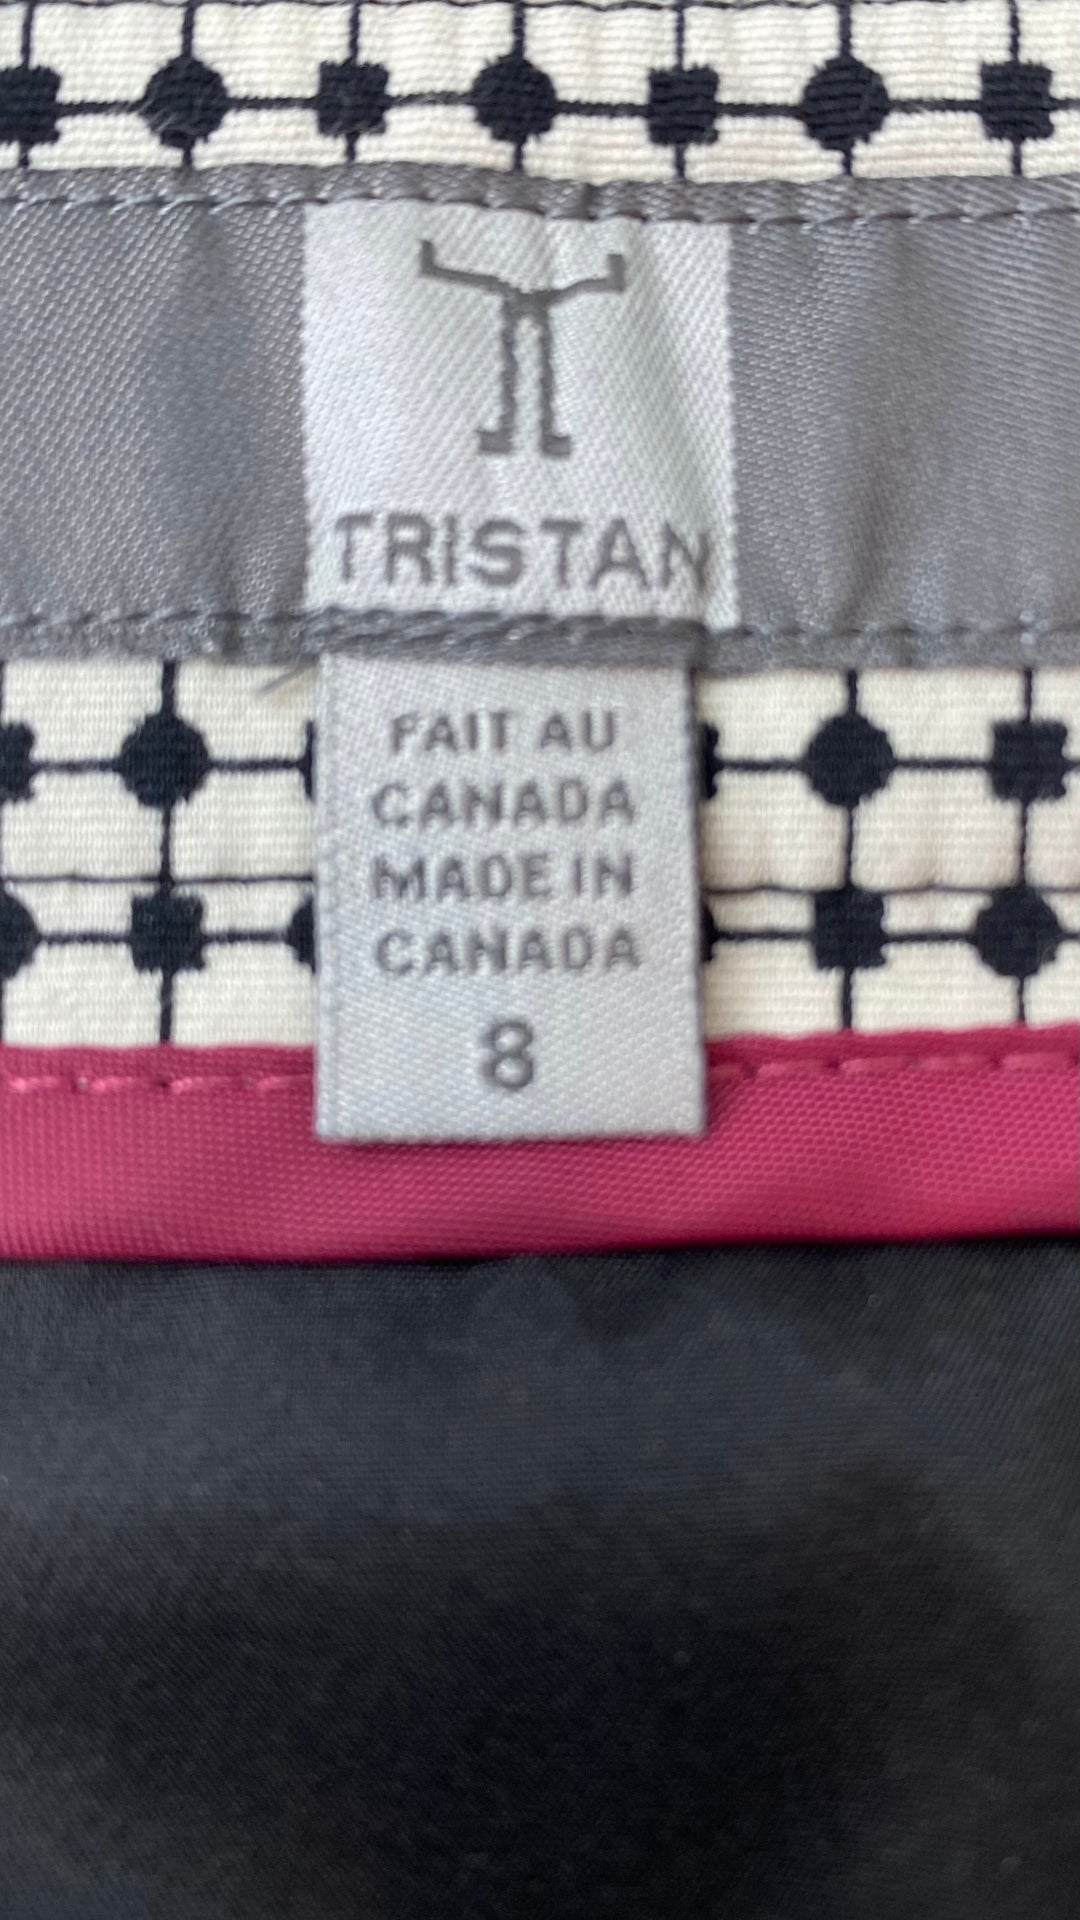 Jupe à plis creux effet optique crème et noir Tristan, taille 8. Vue de l'étiquette de taille et marque.